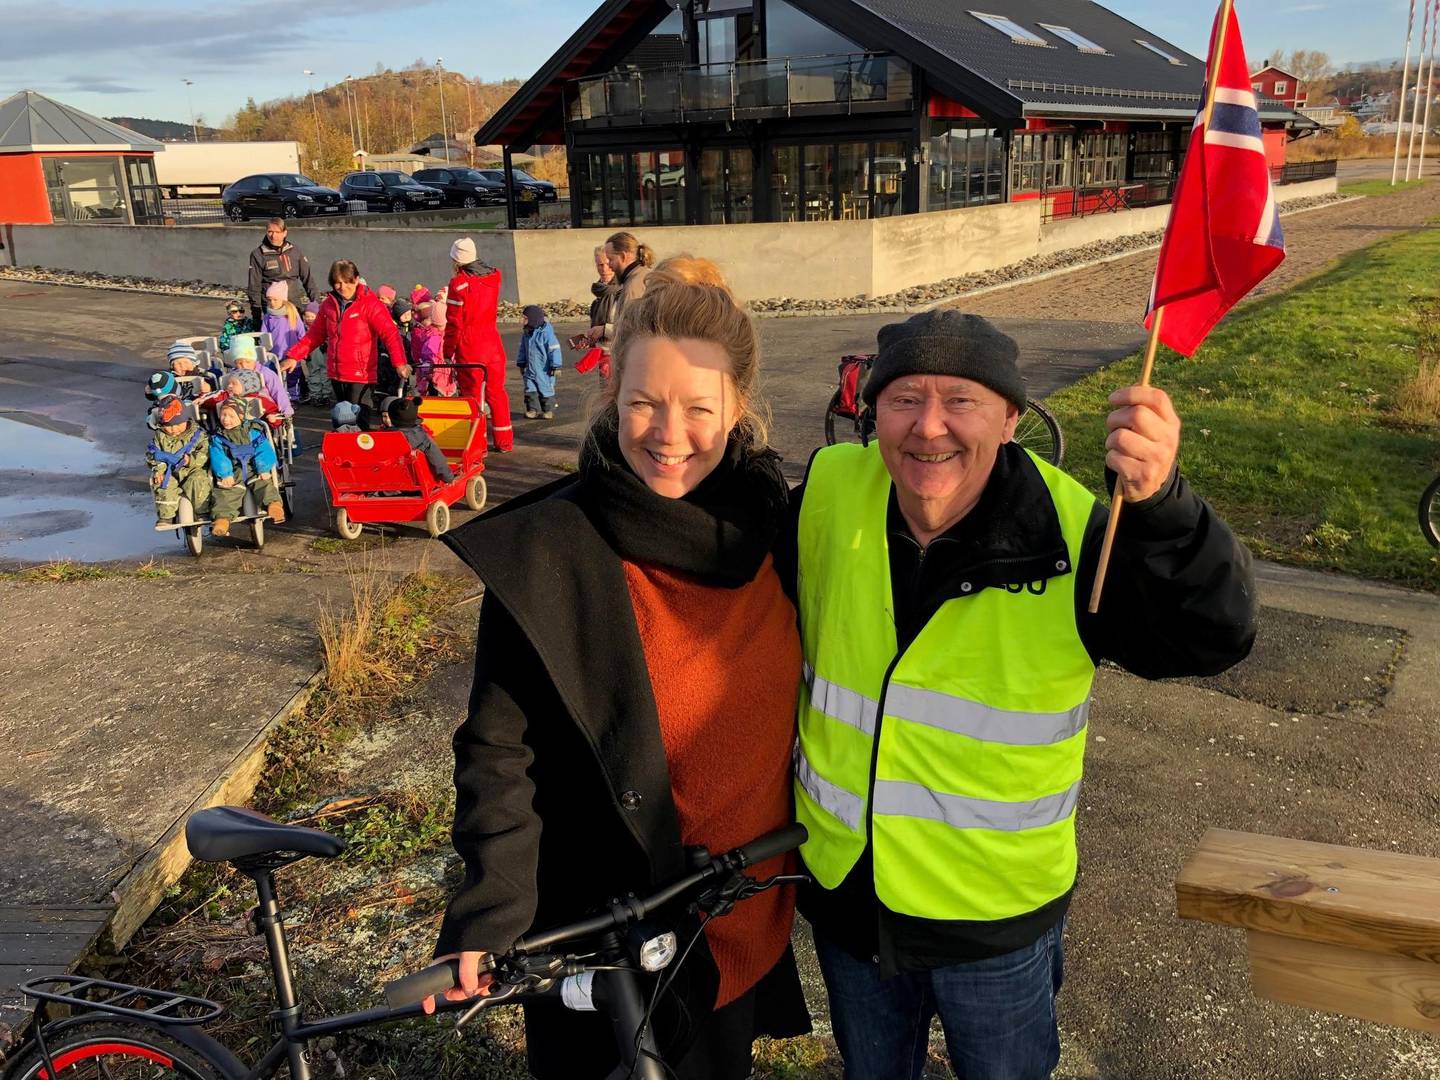 LOKALPATRIOTER: Leder i Gressvik lokalsamfunnsutvalg, Signe Prøis og tidligere leder Oddbjørn Pedersen stilte med sykkel og flagg.